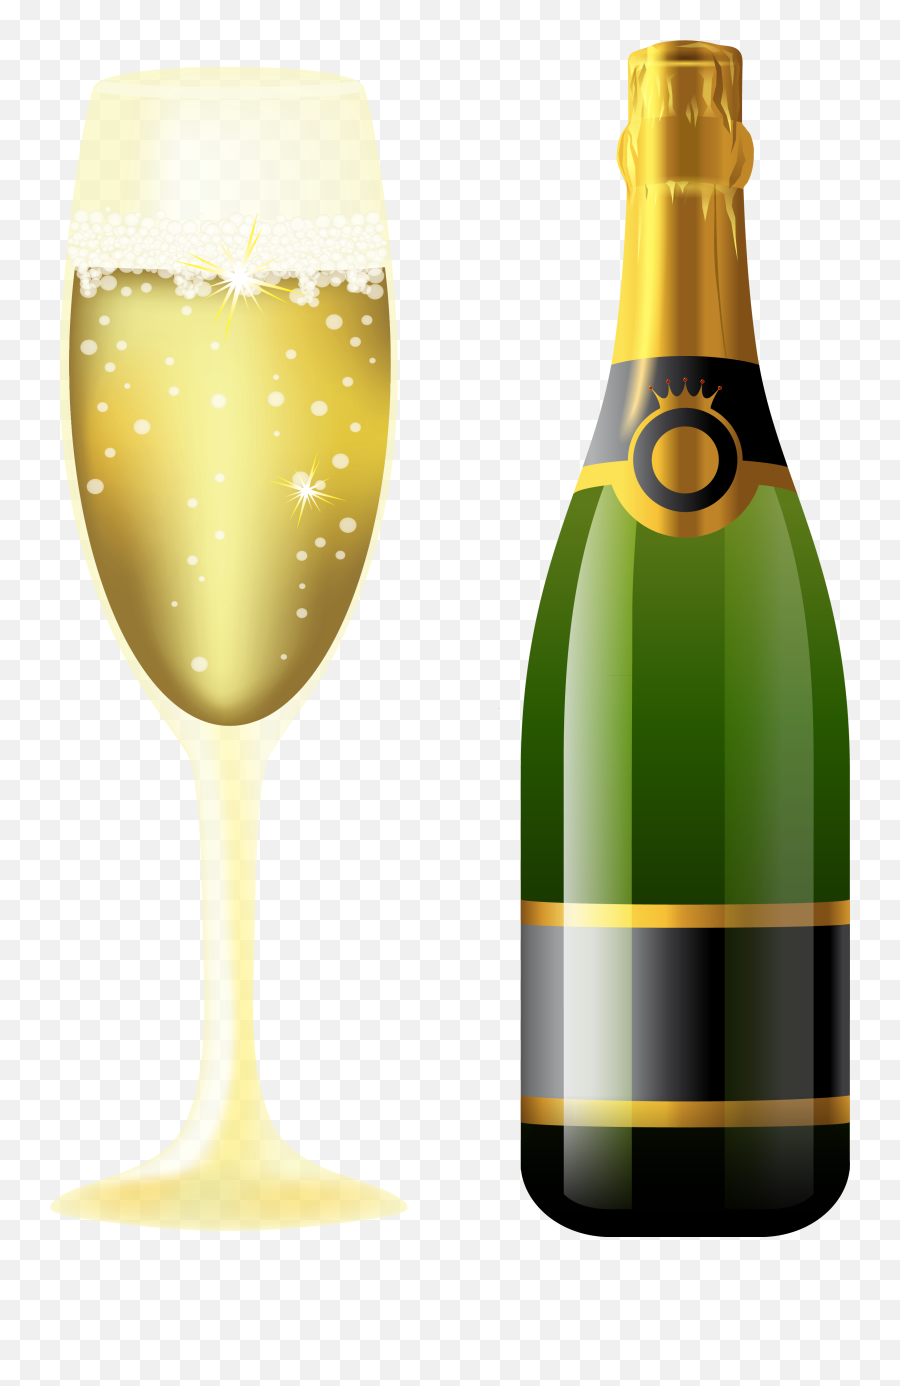 Champagne Bottle Png Transparent Image Arts - Glass And Wine Png,Champagne Glass Transparent Background